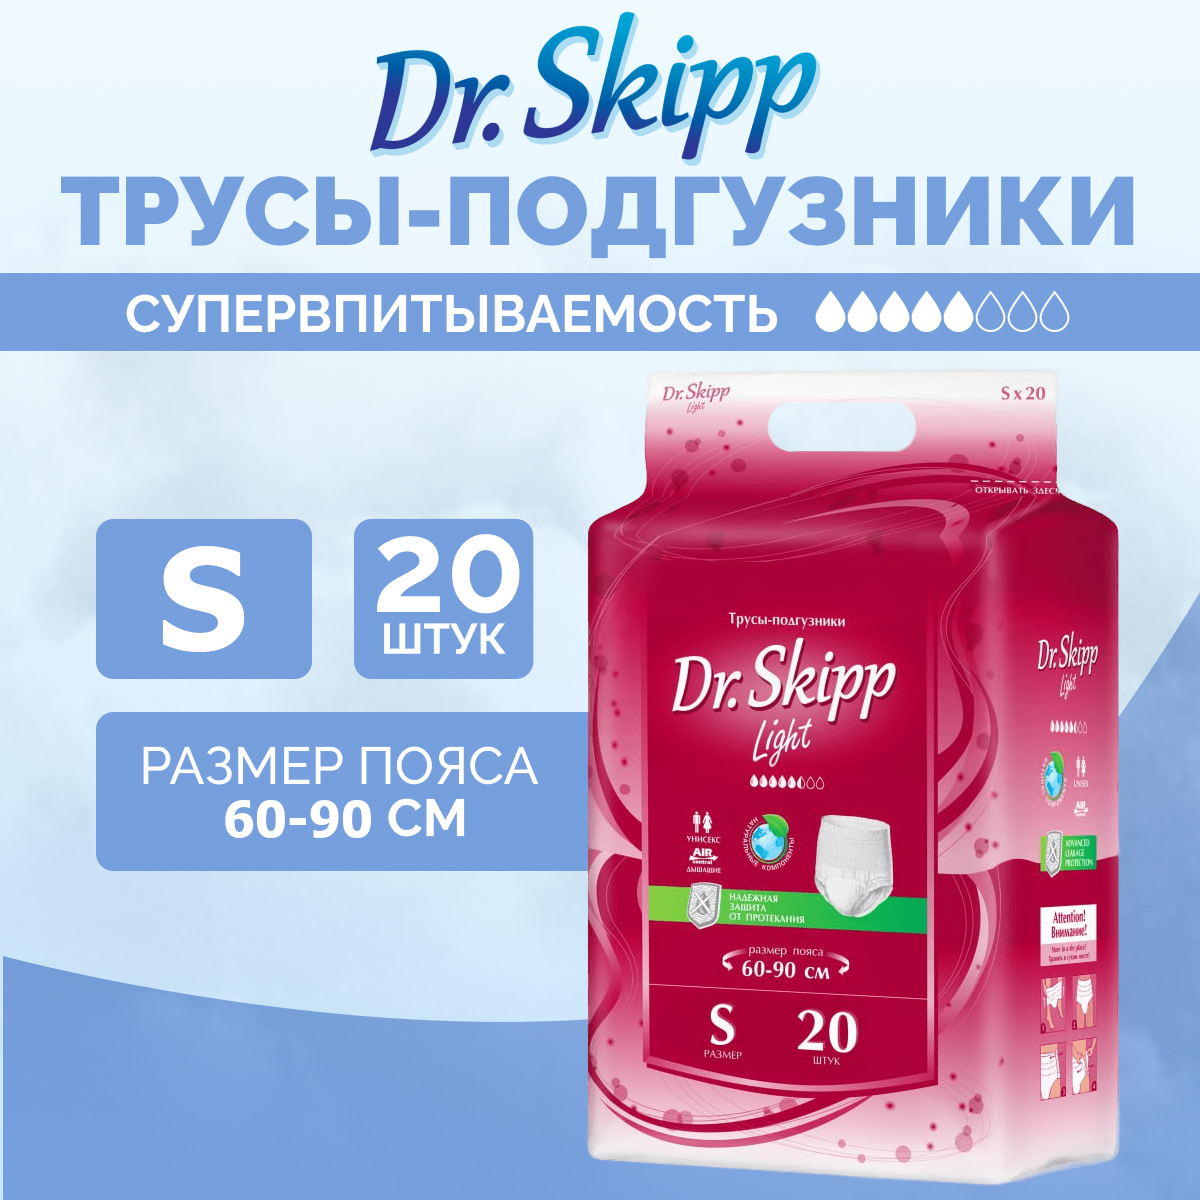 Трусы-подгузники для взрослых Dr.Skipp Light, размер S-1, 60-90 см, 20 шт - купить в интернет-магазинах, цены на Мегамаркет | подгузники для взрослых 8143